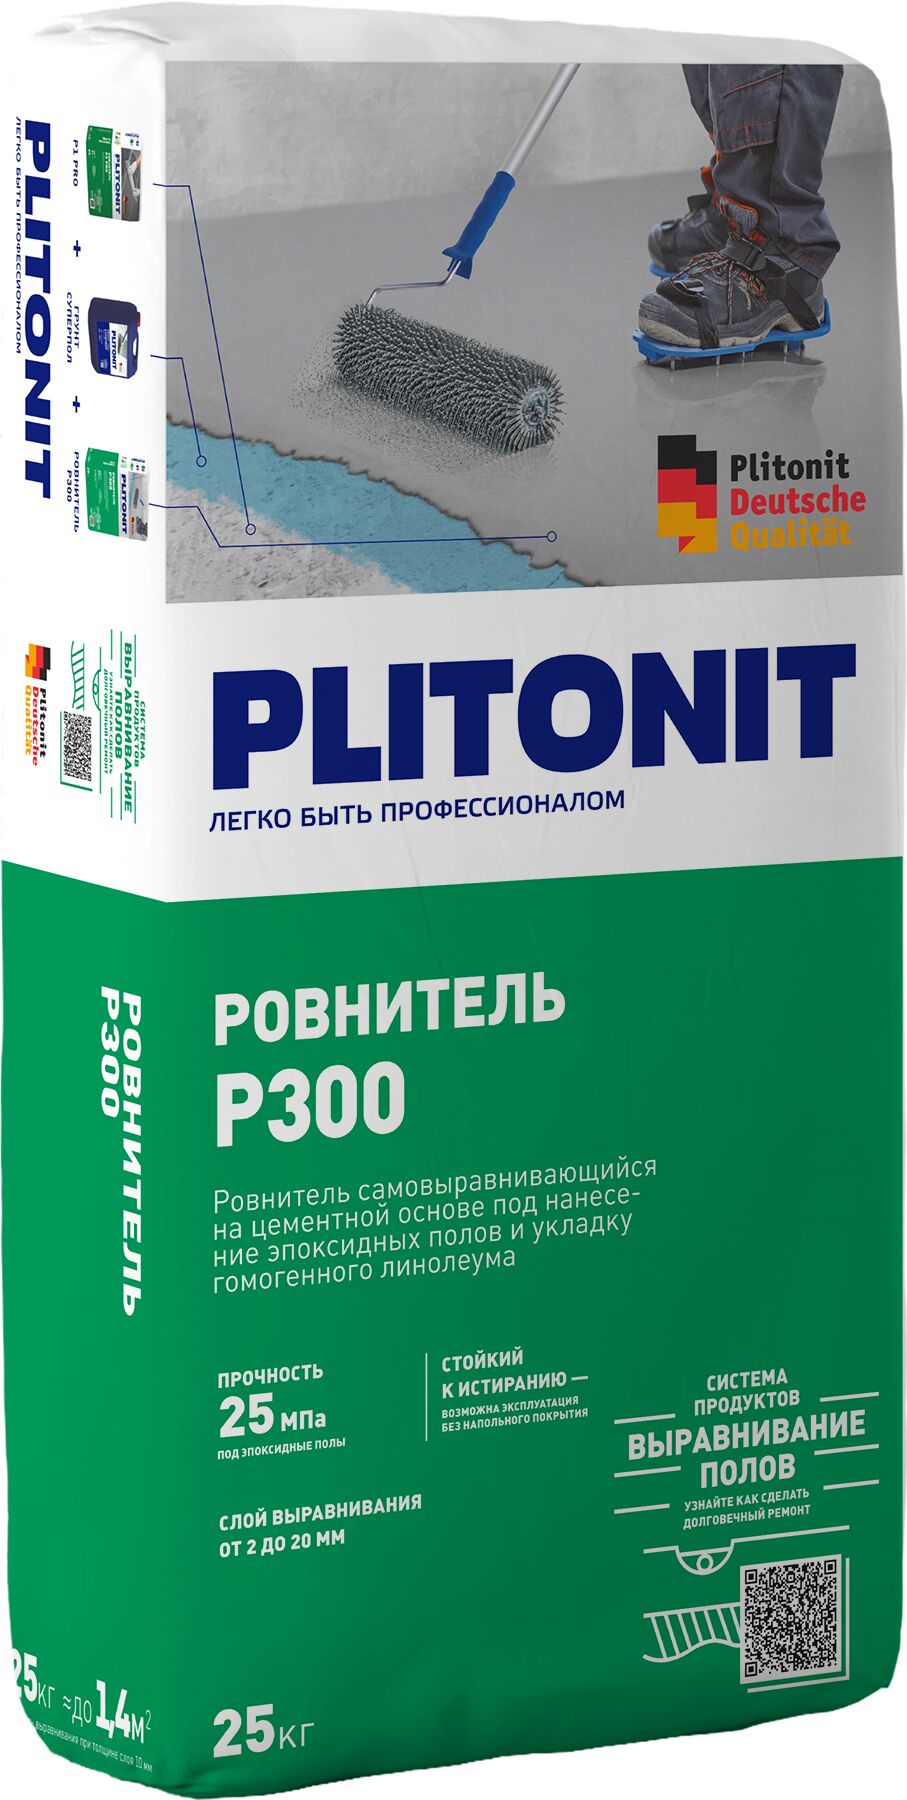 PLITONIT Р300 -25 ровнитель износостойкий, высокопрочный для финишного выравнивания , PLITONIT Р300 -25 ровнитель износостойкий, высокопрочный для финишного выравнивания 